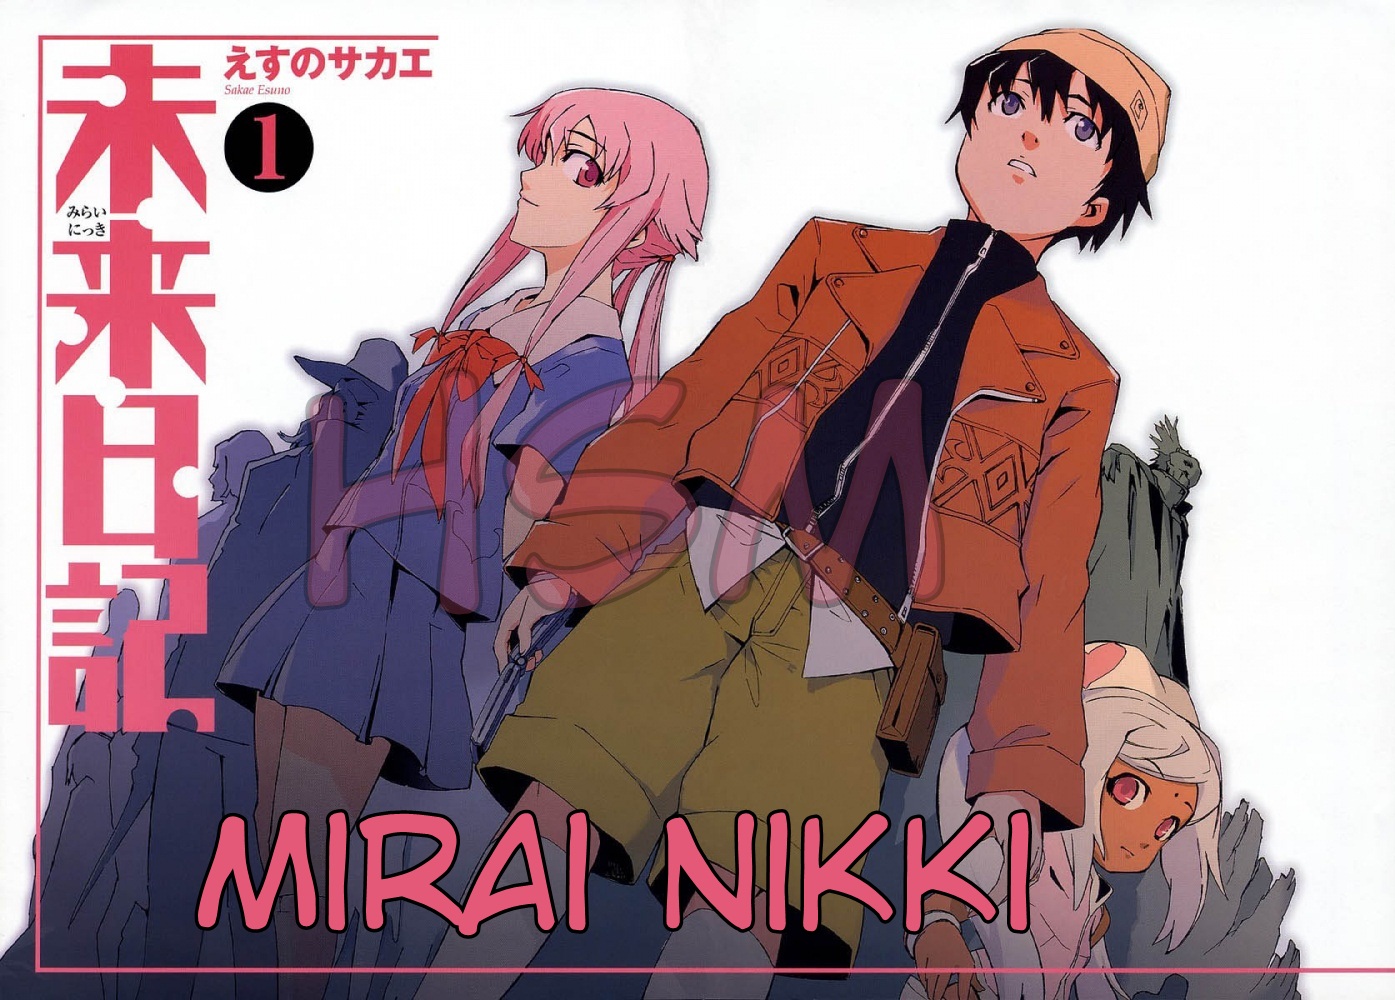 Quem você seria em Mirai Nikki?